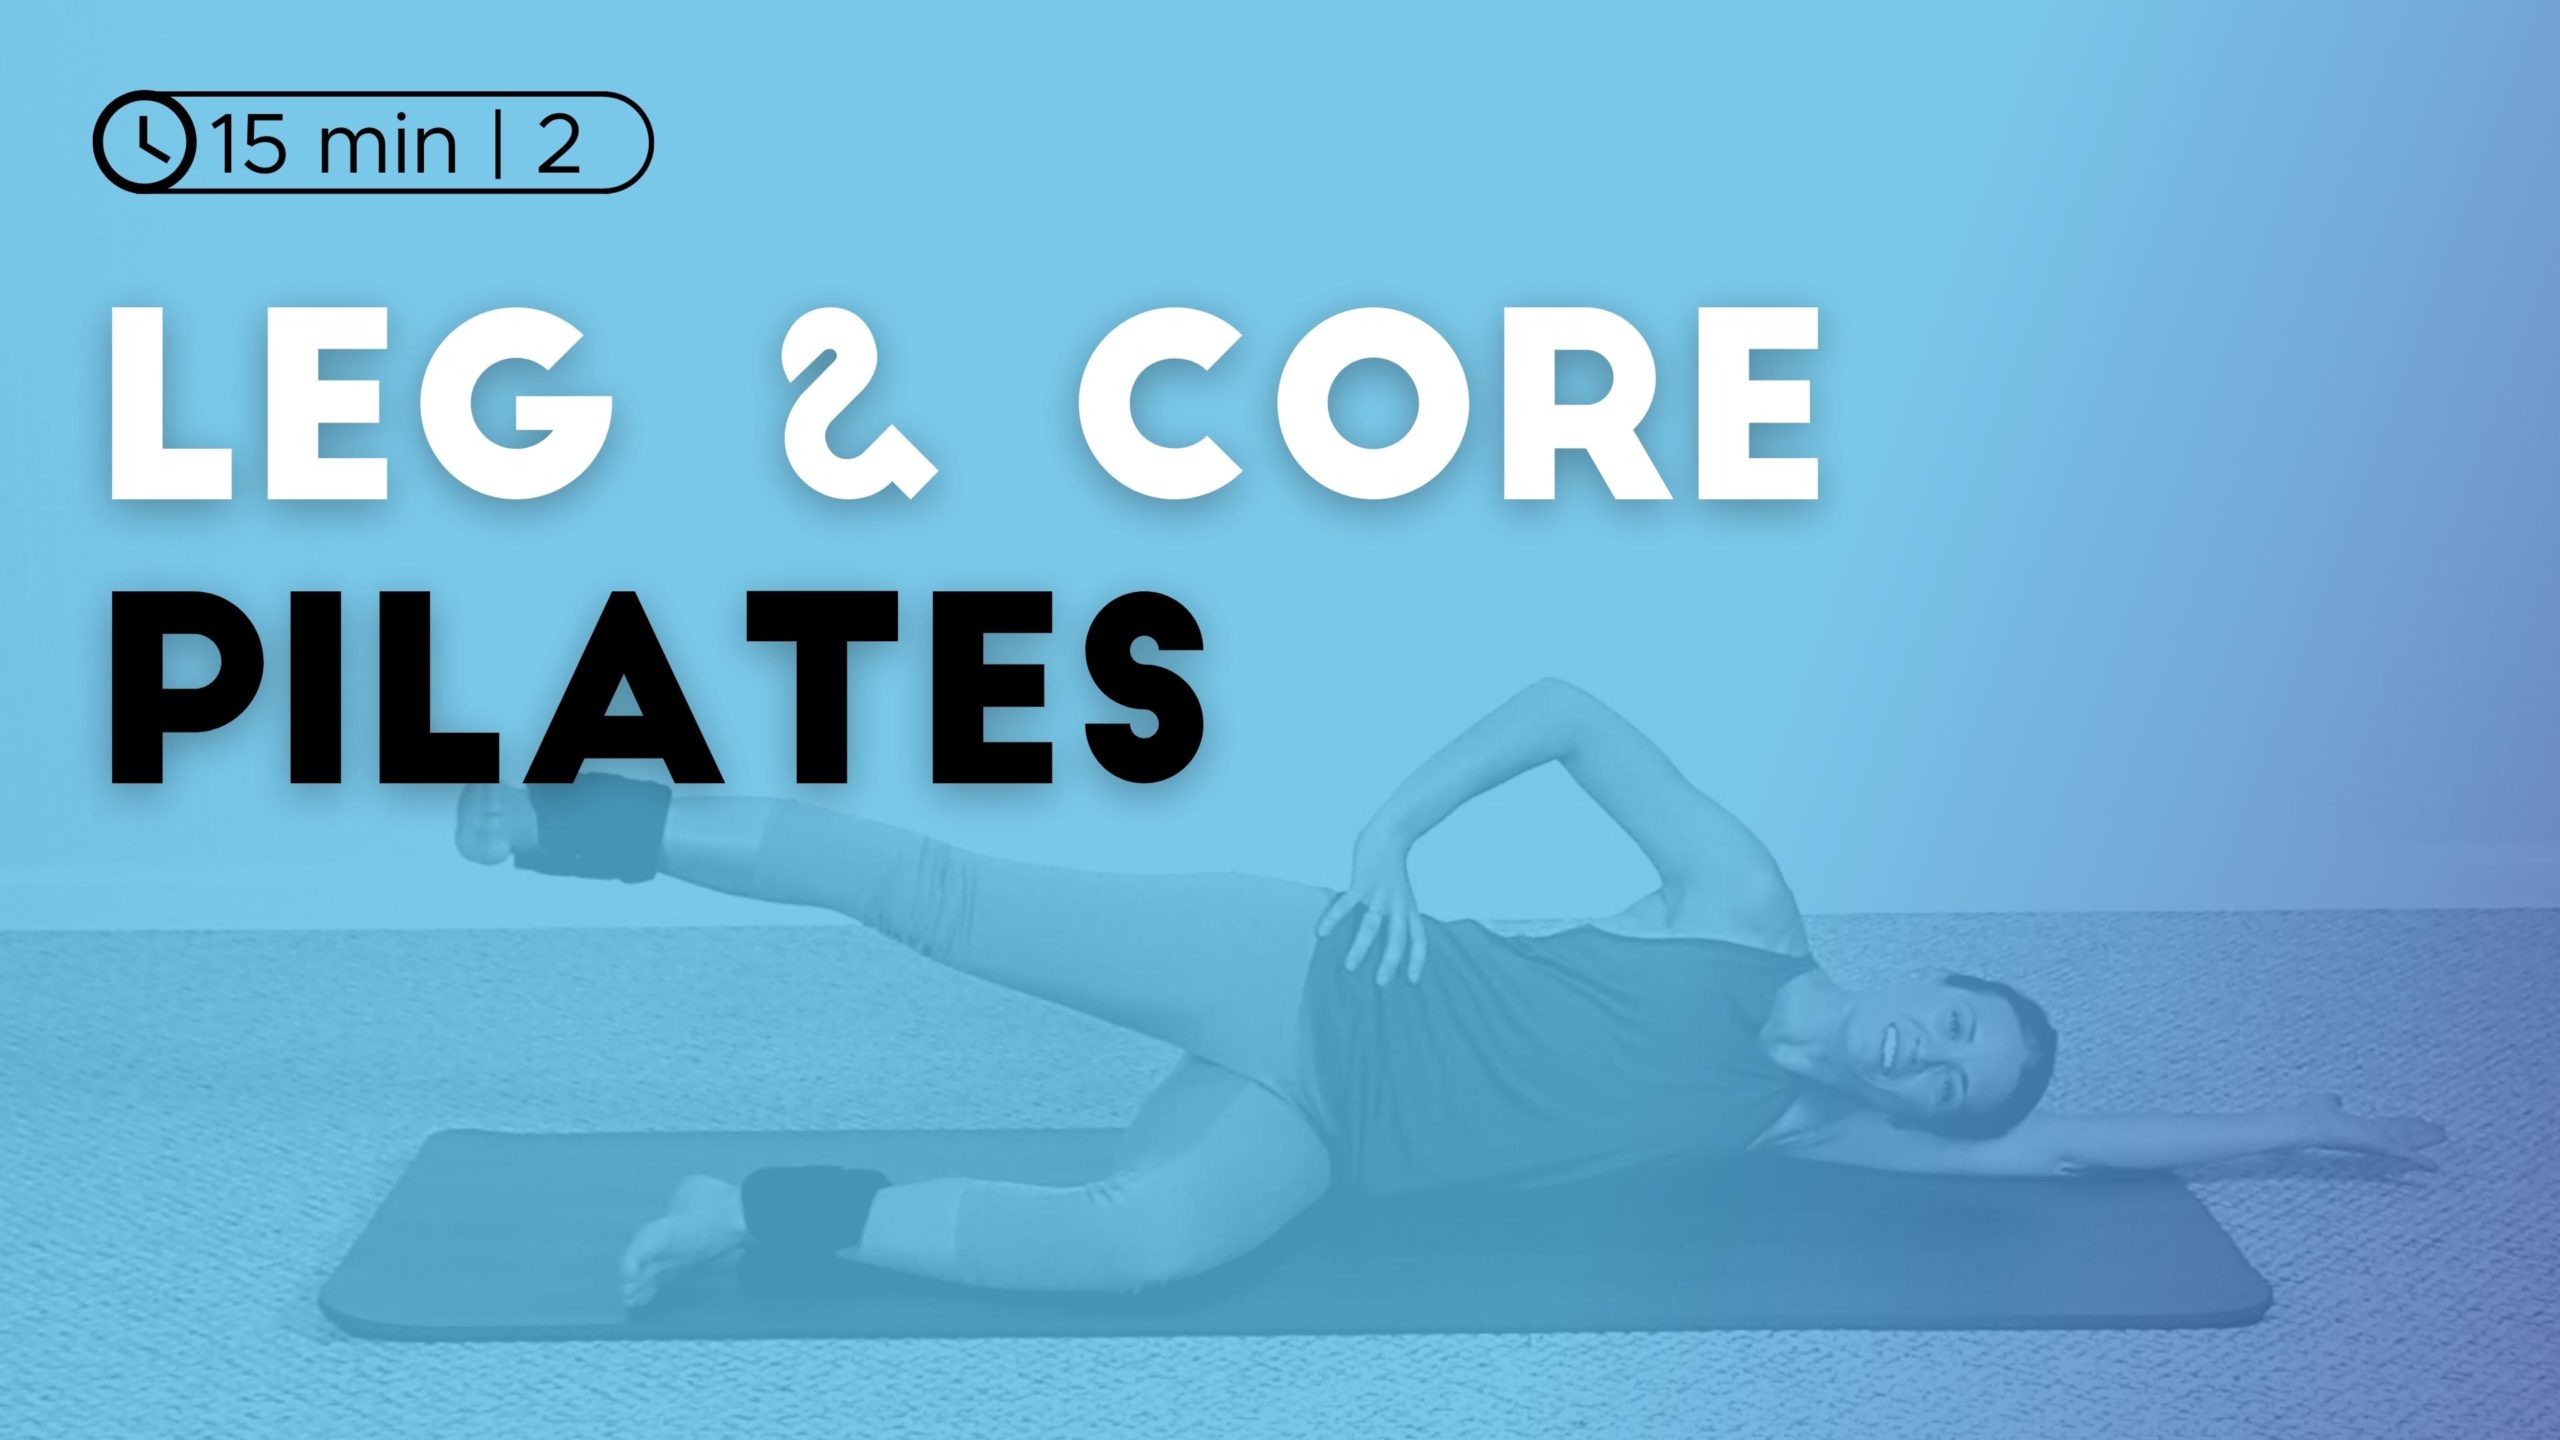 Leg & Core Workout